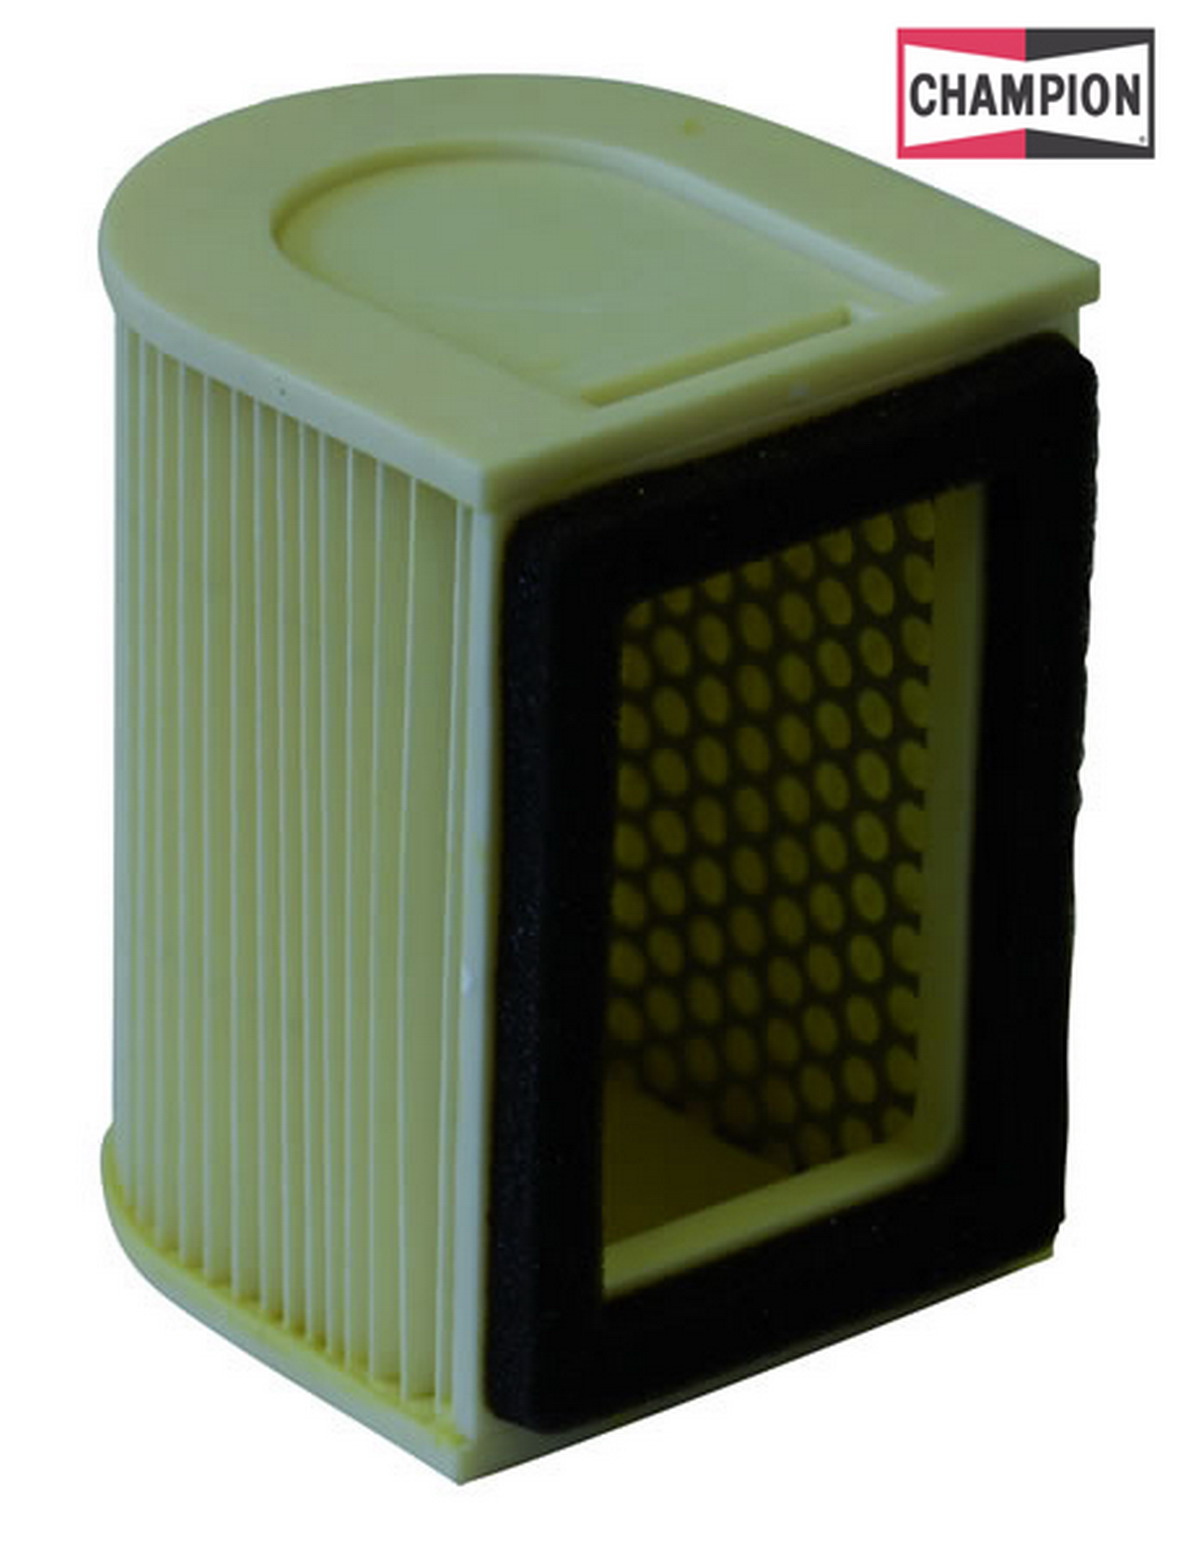 Obrázek produktu Vzduchový filtr CHAMPION J310/301 100604225